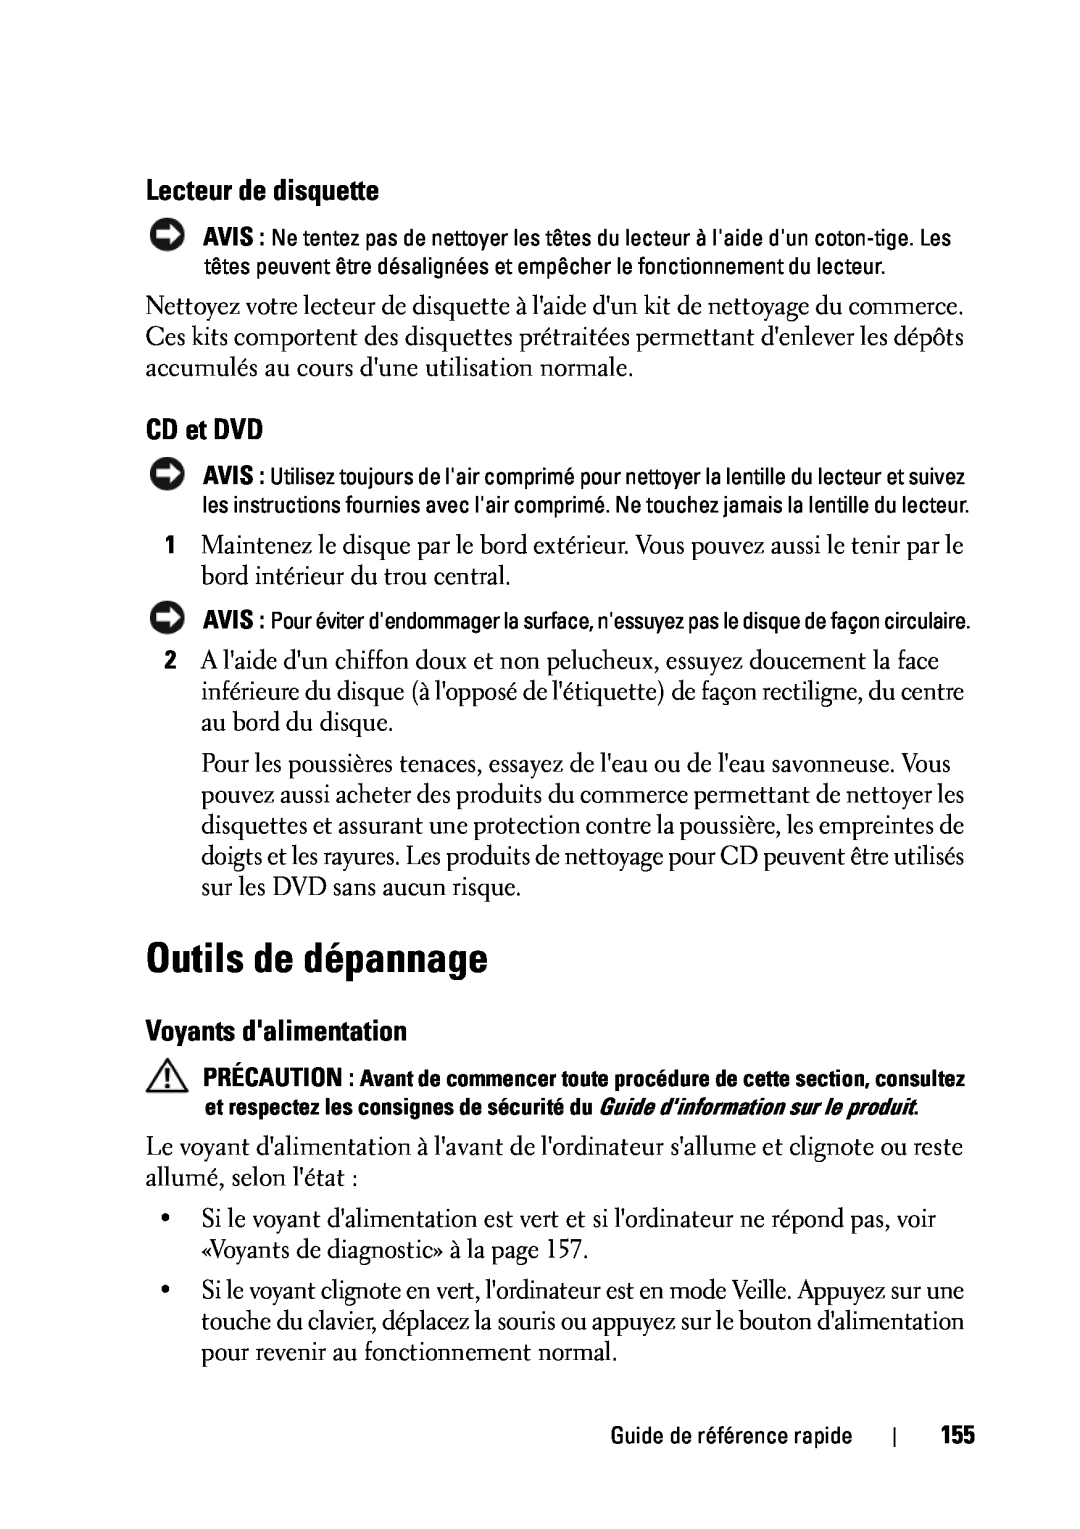 Dell T5400 manual Outils de dépannage, Lecteur de disquette, CD et DVD, Voyants dalimentation 